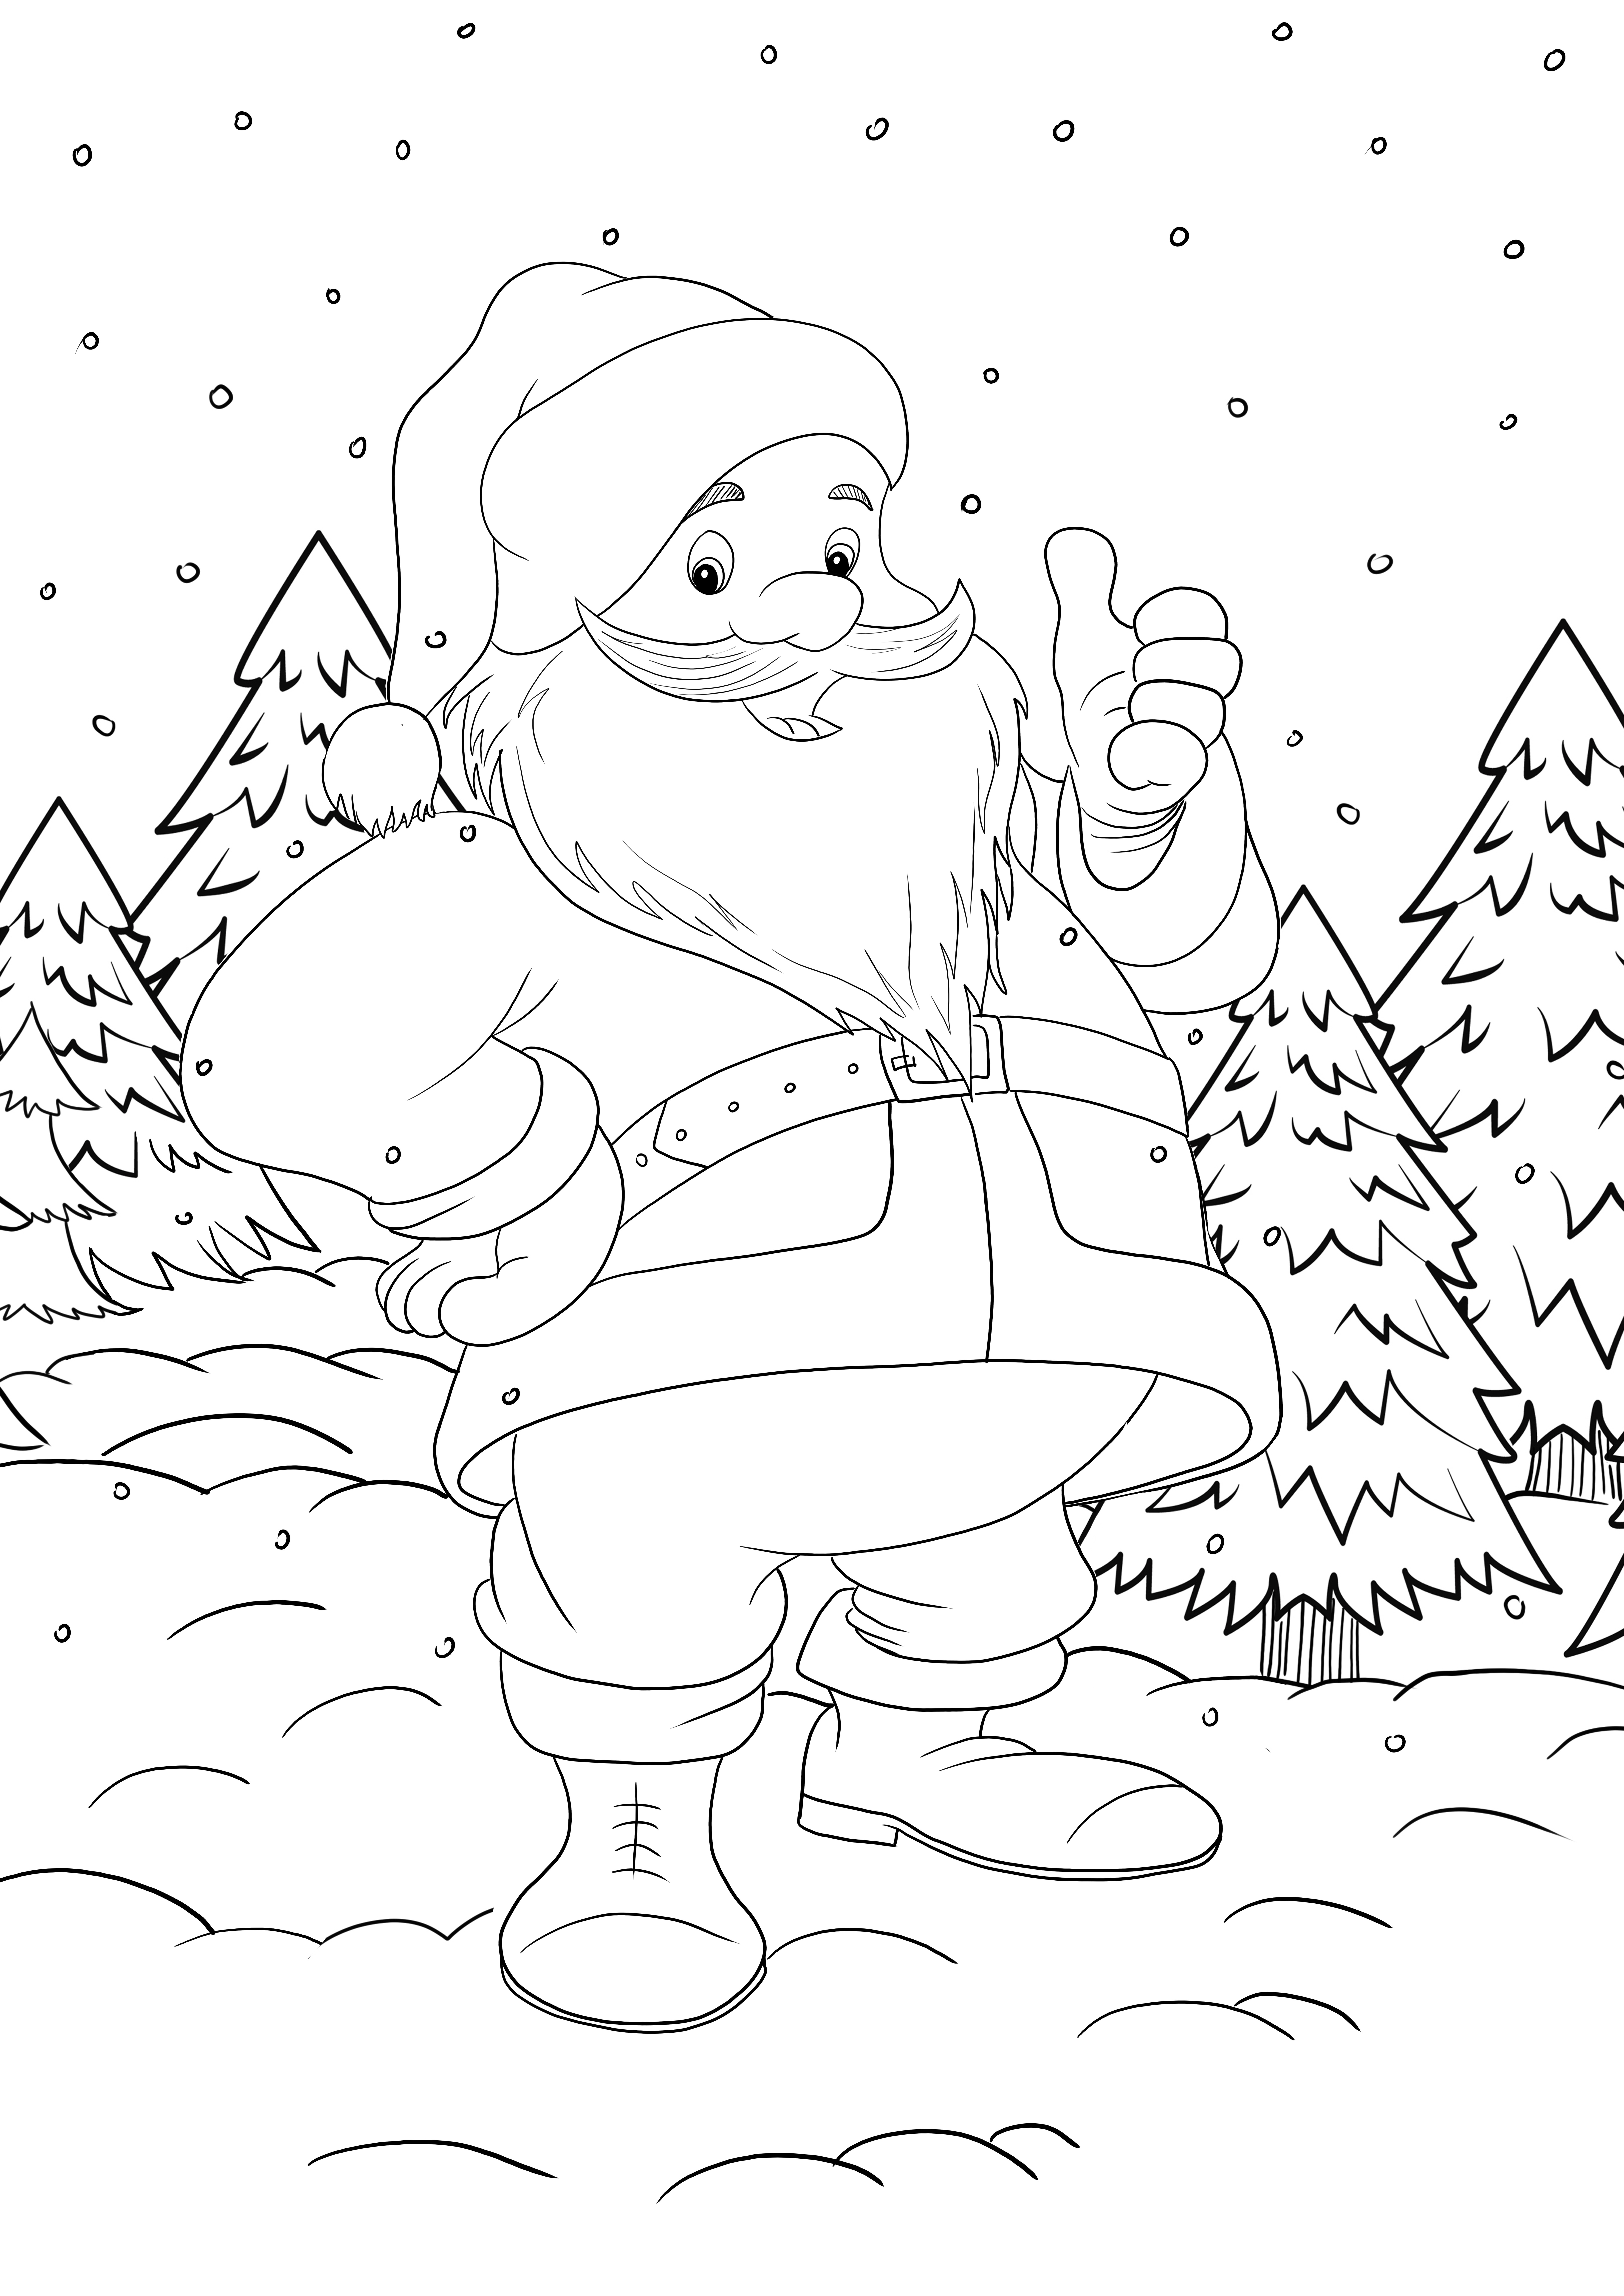 Santa Claus yang lucu diacungi jempol dan menunggu untuk diwarnai secara gratis oleh anak-anak